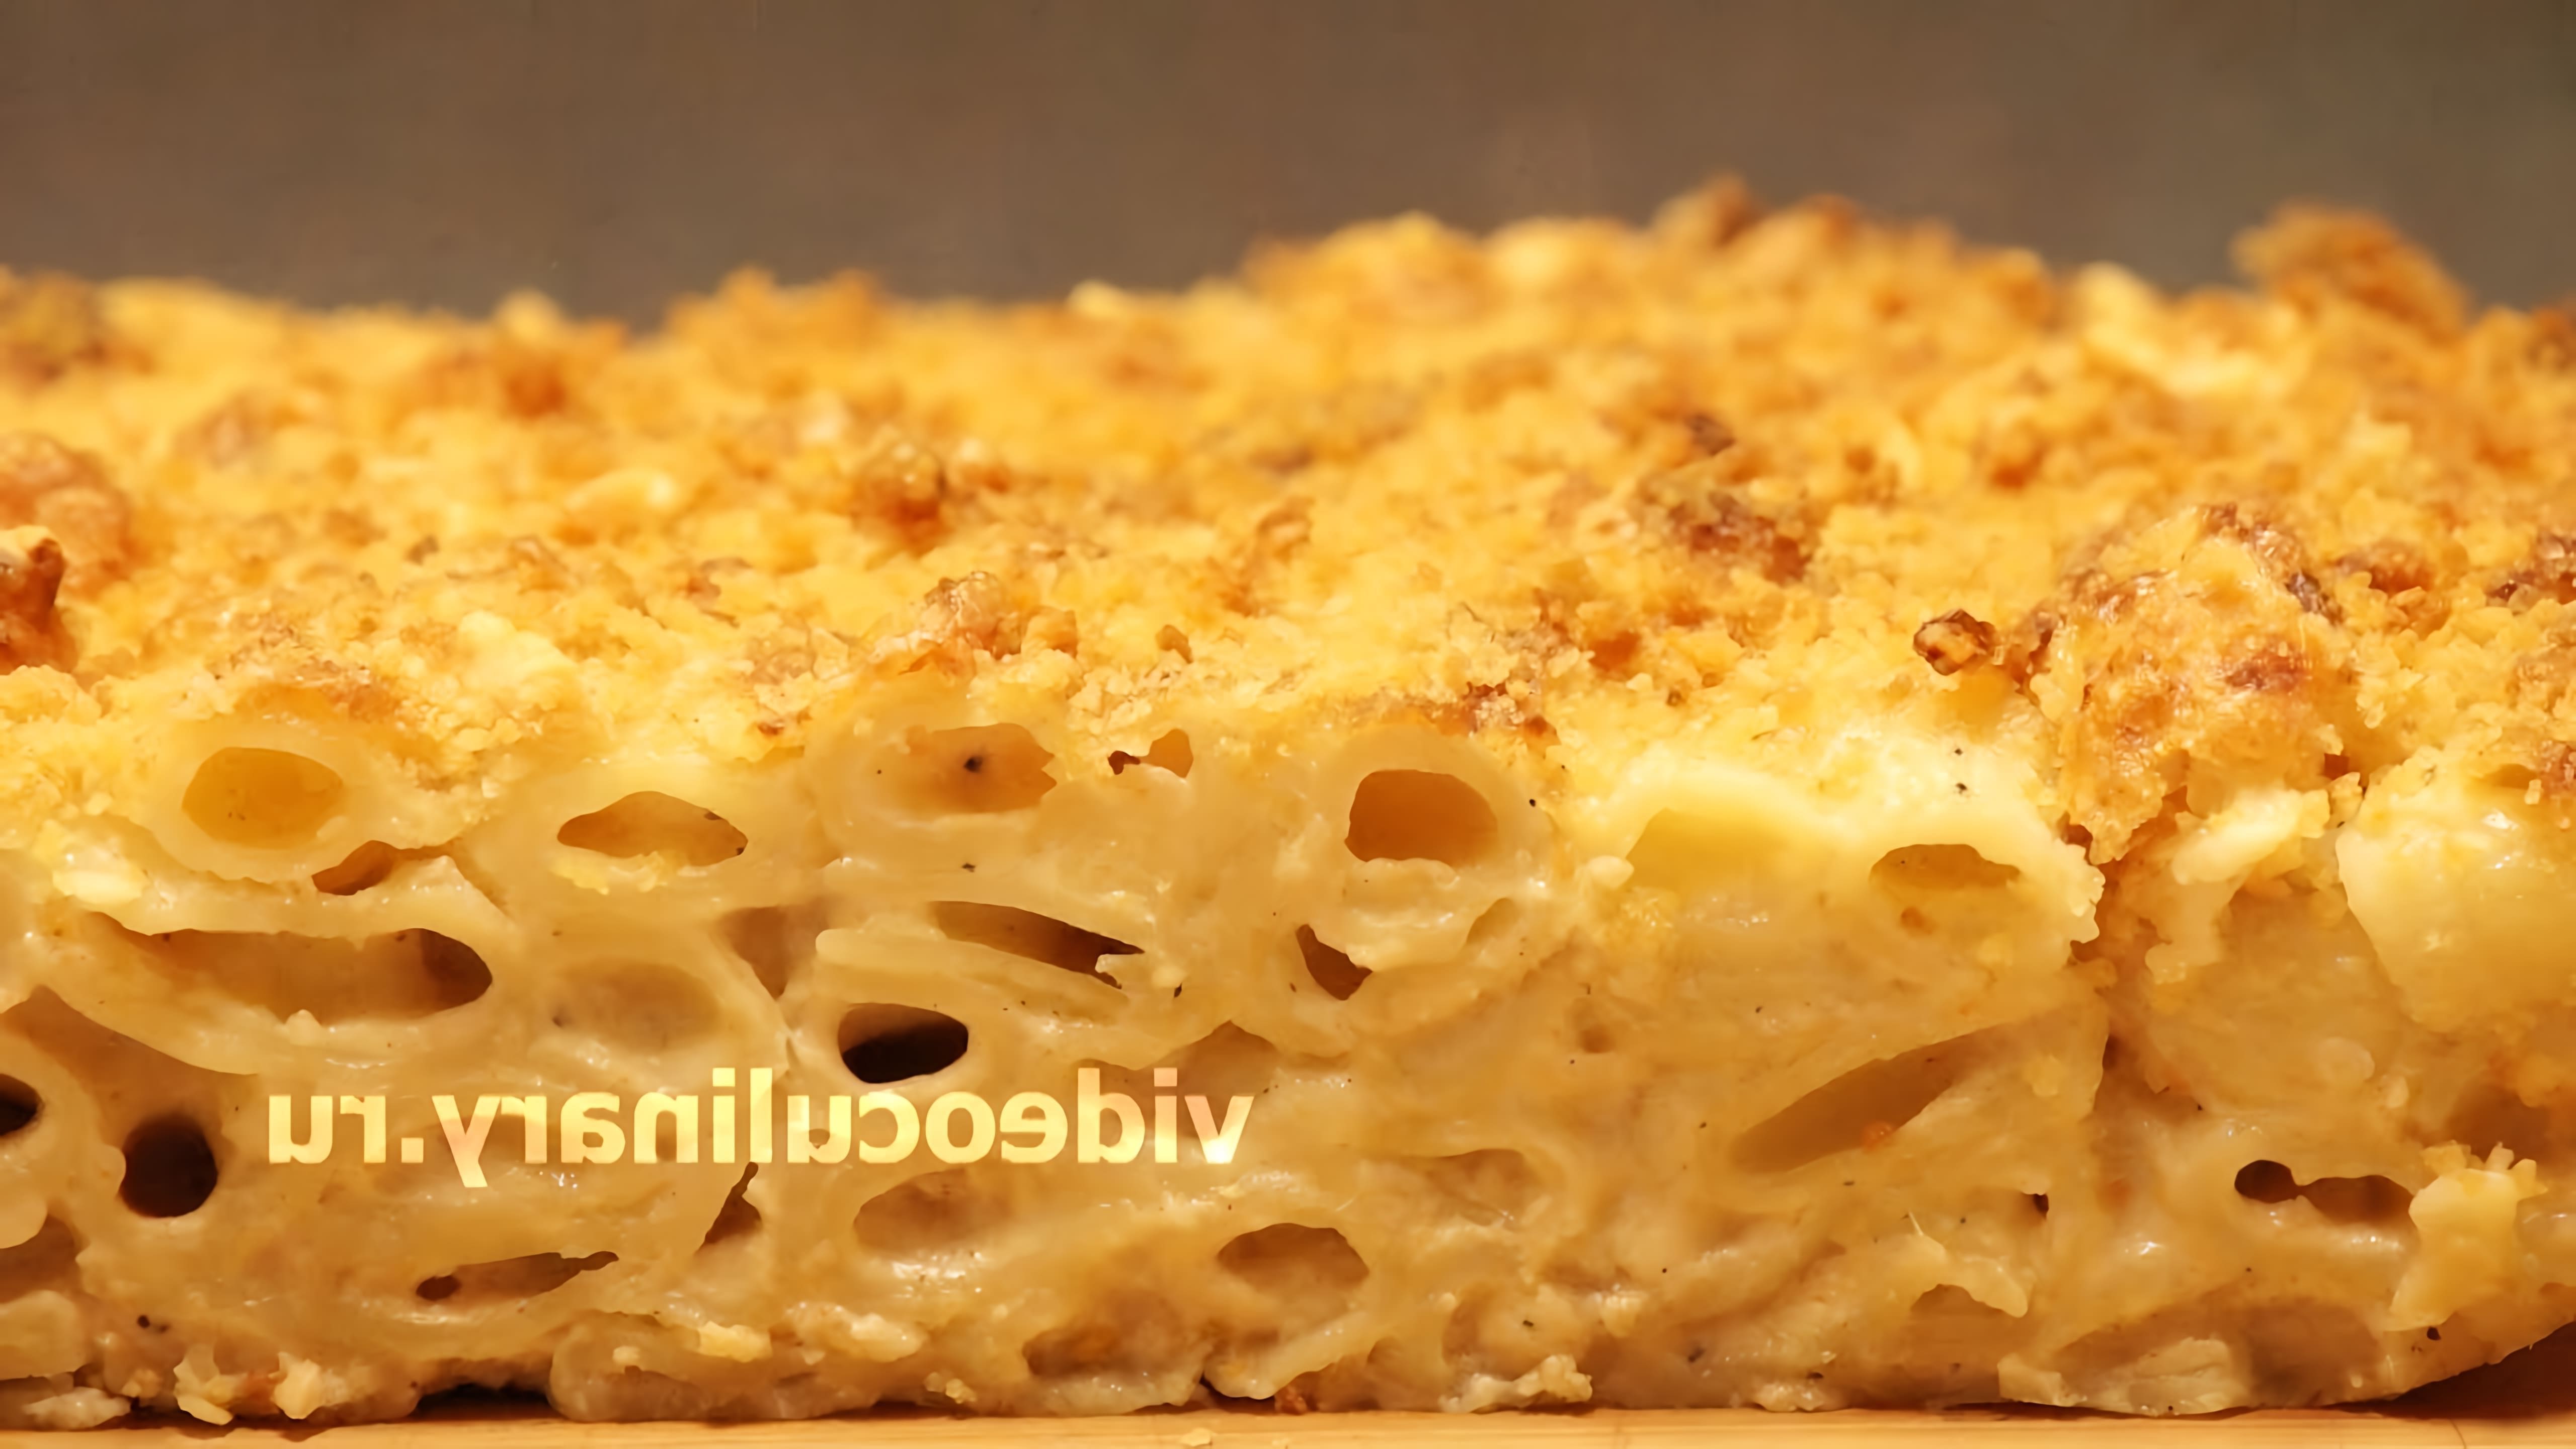 В этом видео демонстрируется рецепт запеканки из макарон с сыром от Бабушки Эммы